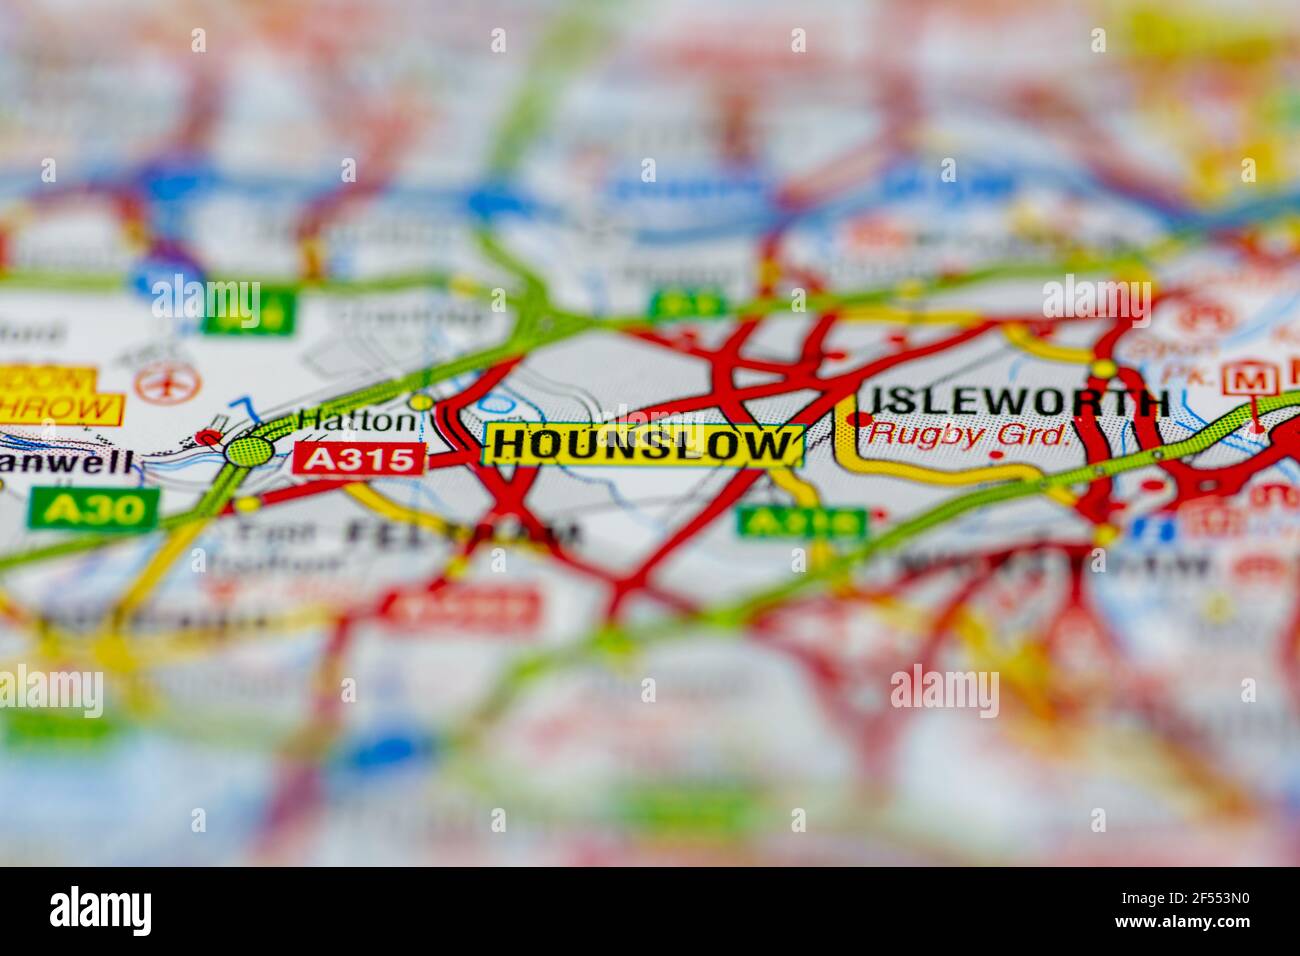 Hounslow wird auf einer Geografie- oder Straßenkarte angezeigt Stockfoto